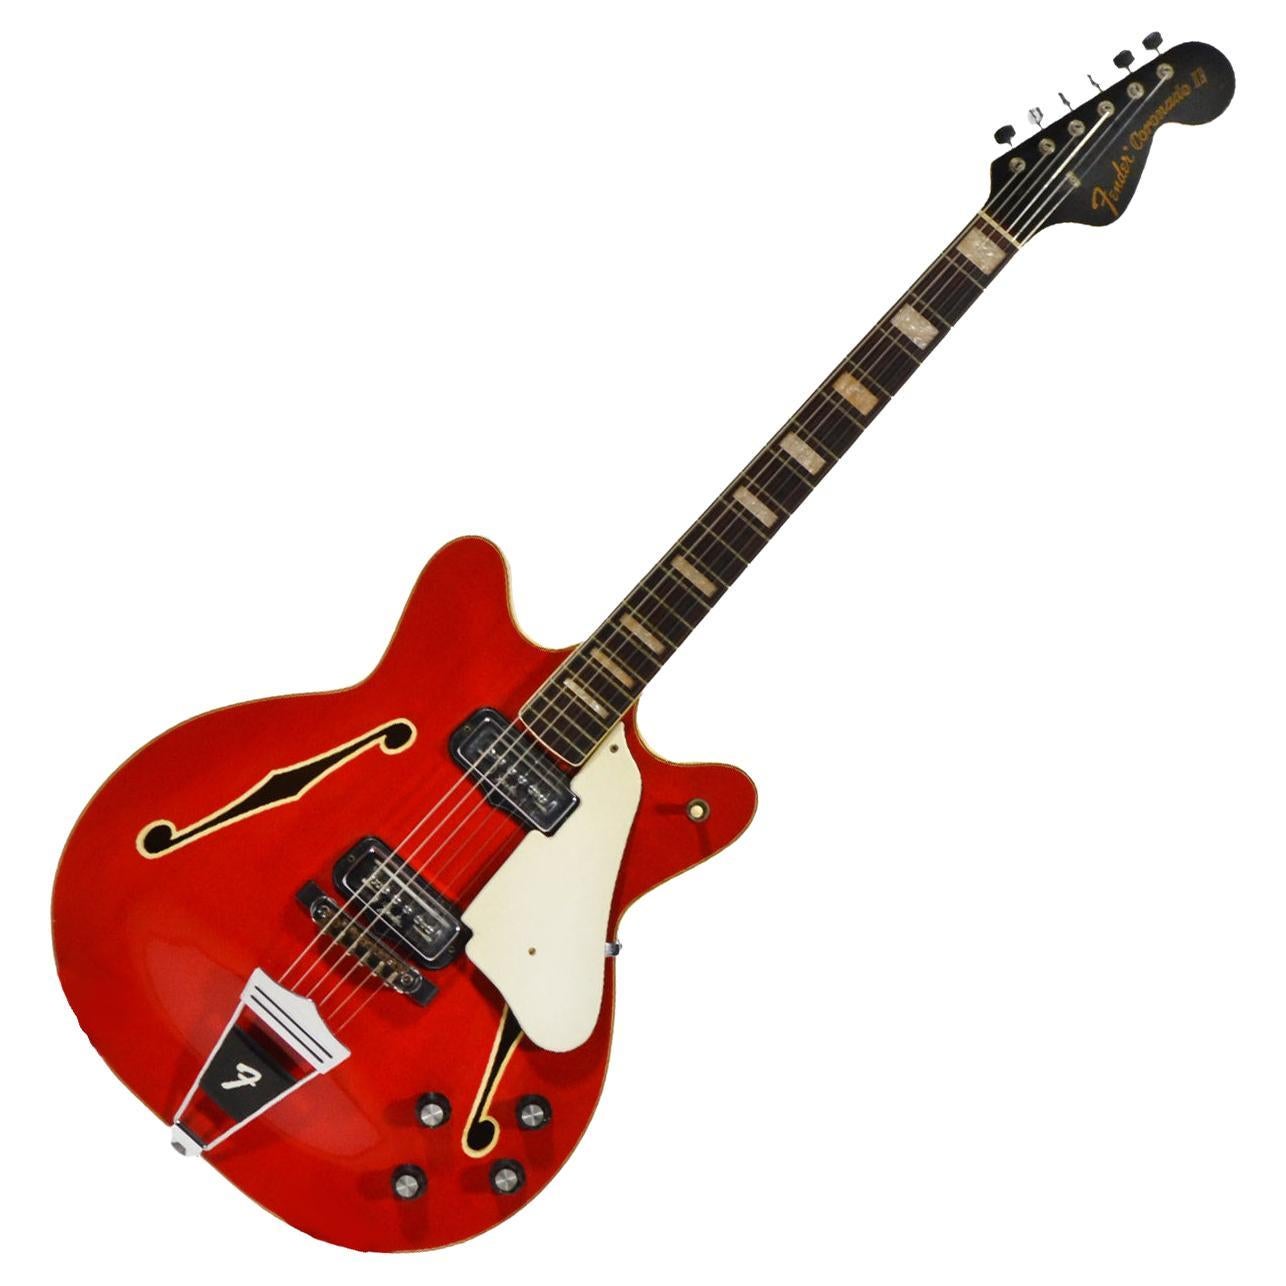 1967 Feuerschutz Coronado II Gitarre